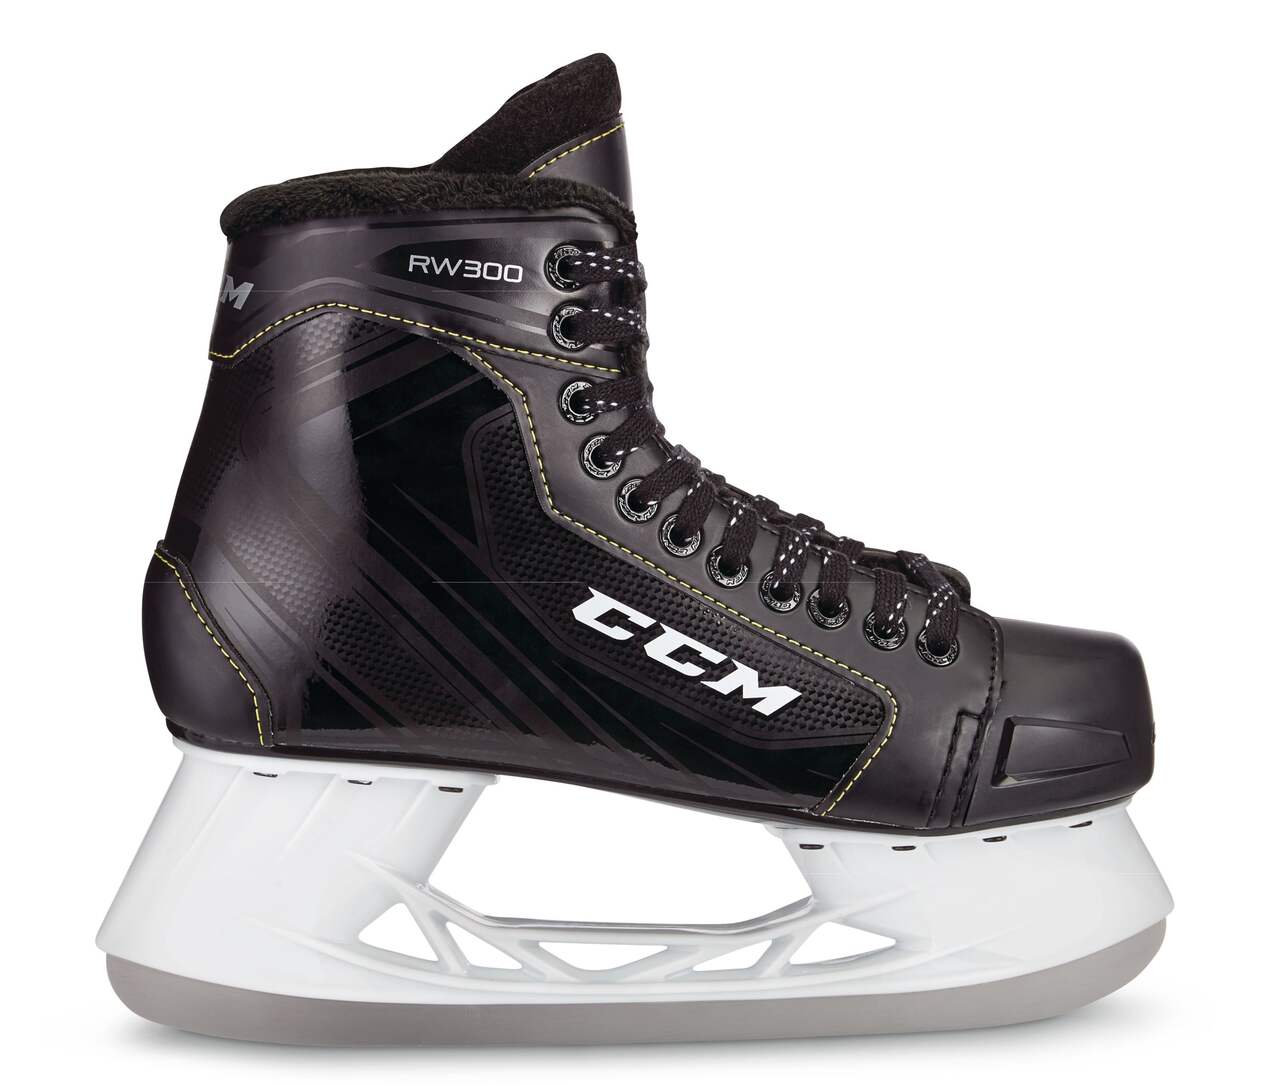 CCM RW 300 Men's Senior Recreational Ice Skates, Black, Sizes 6-12